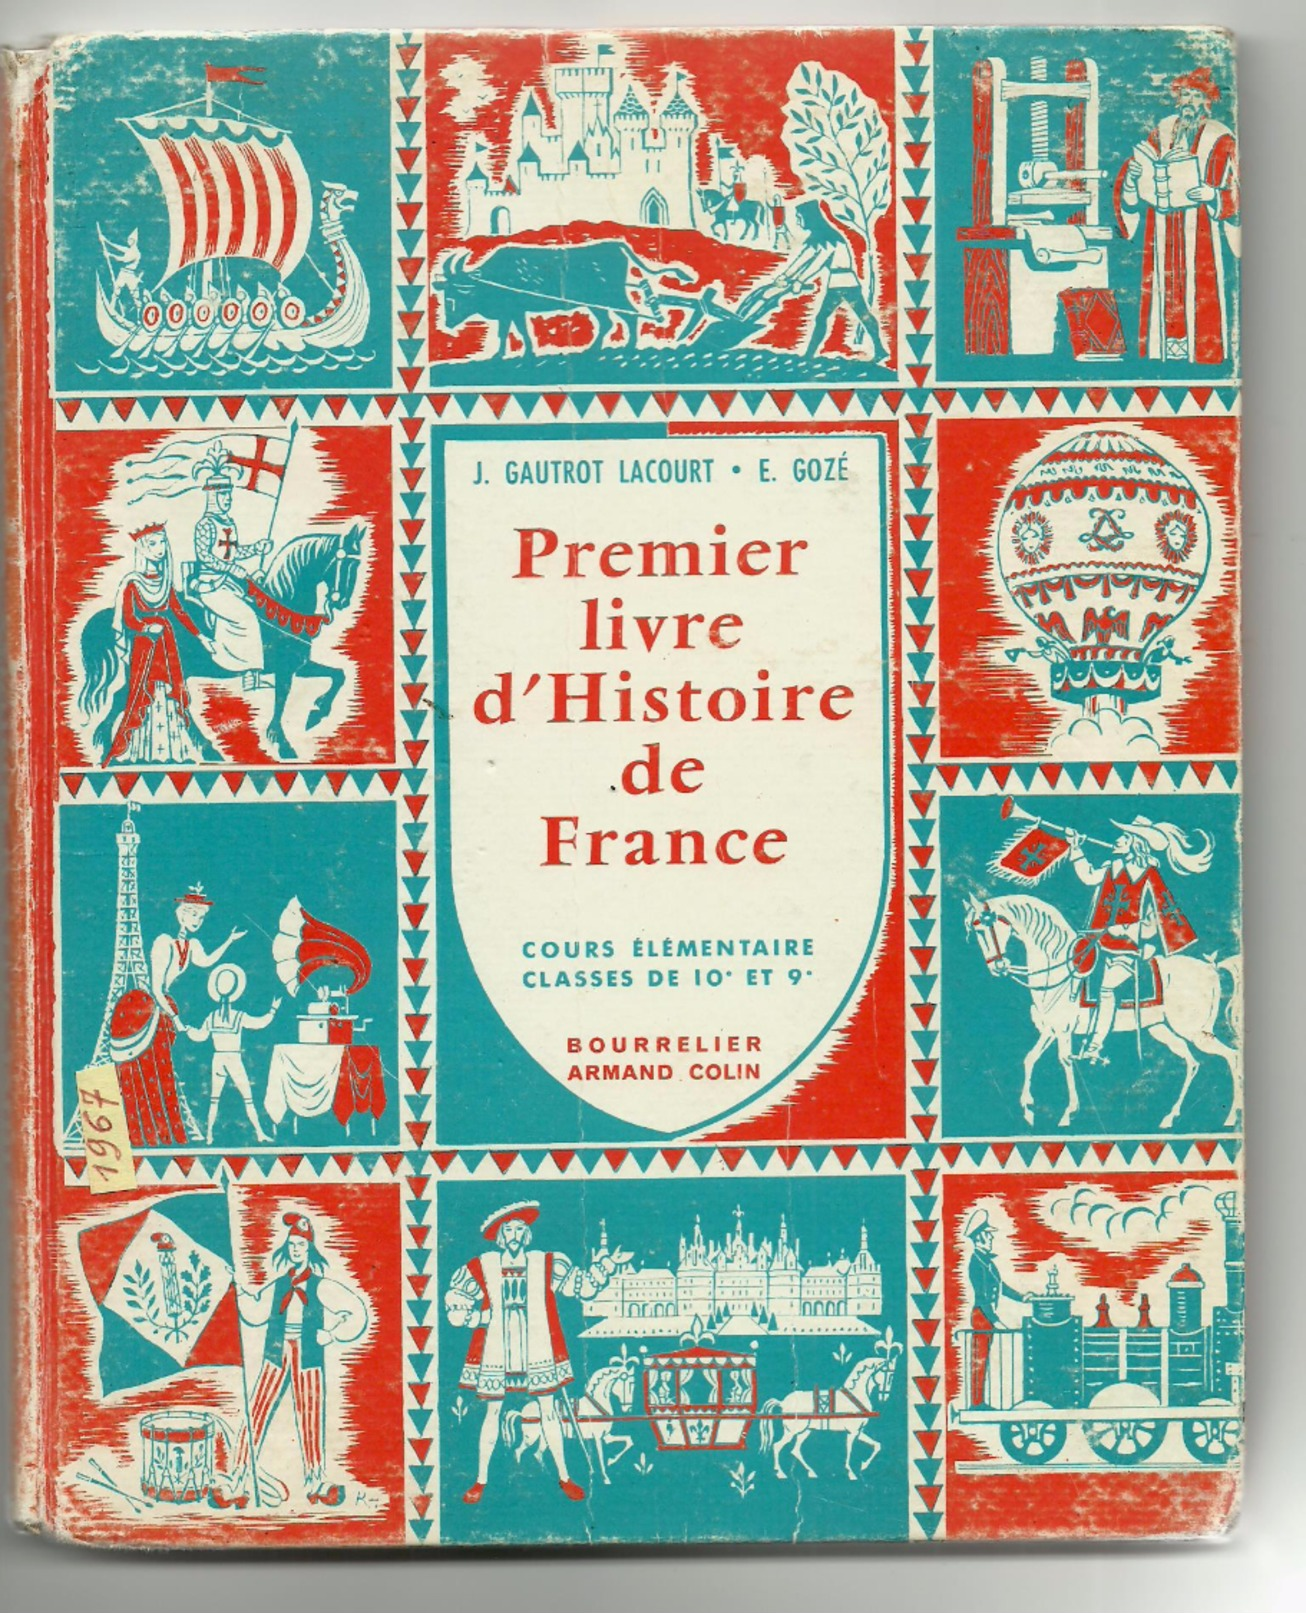 1967-EXCELLENT état !-PREMIER LIVRE D'HISTOIRE DE FRANCE -"CE1 CE2"-Ed.Bourrelier A.Colin-(Gautrot Lacourt,Gozé) - 12-18 Jaar